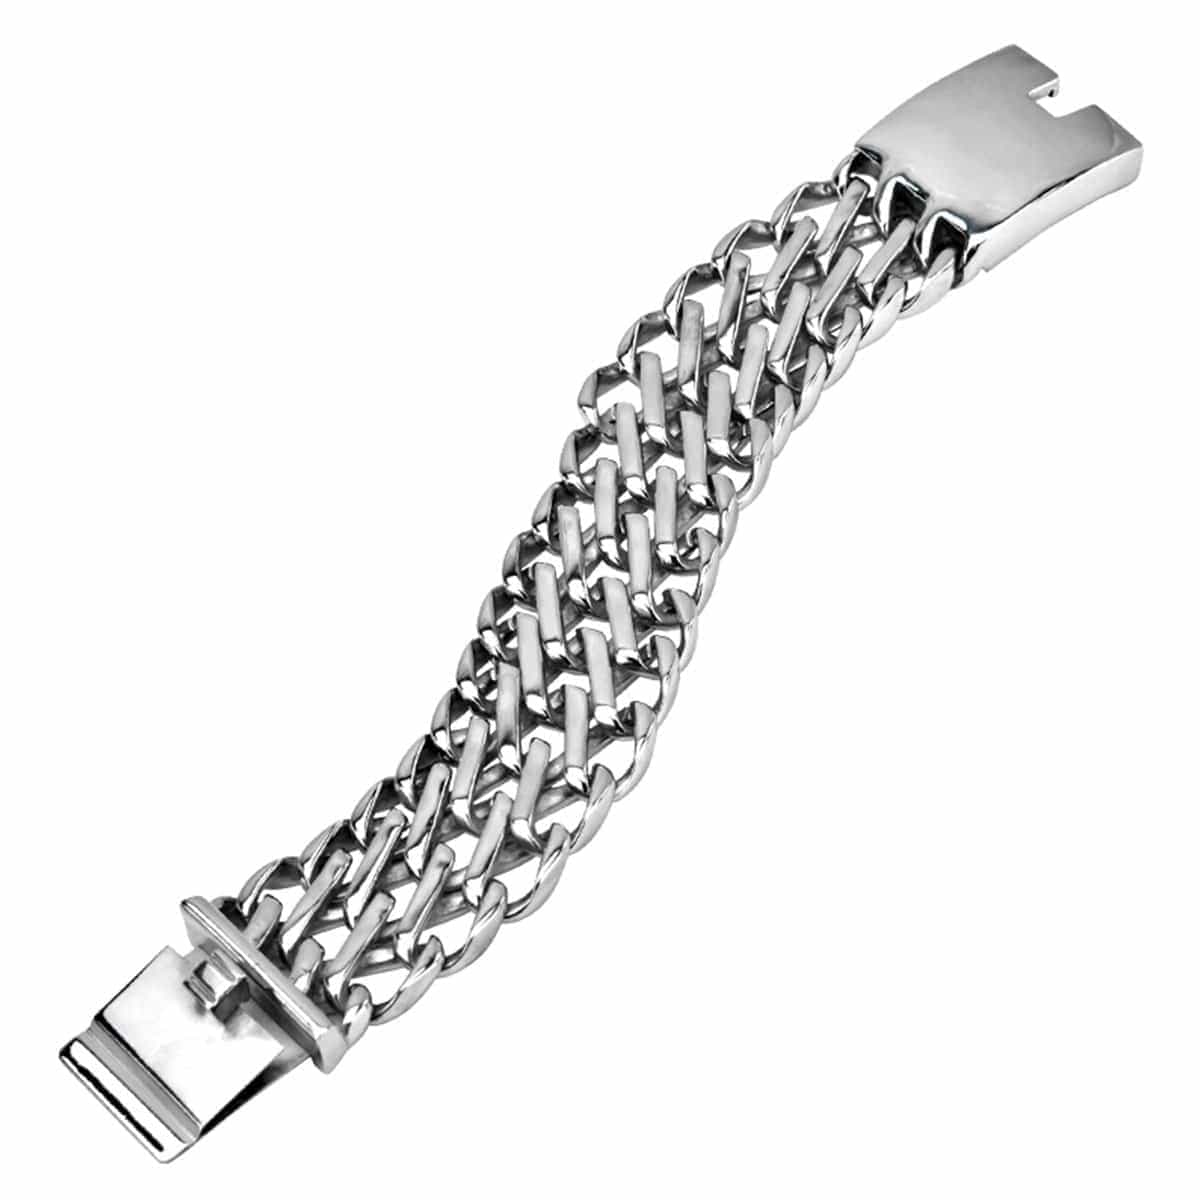 INOX JEWELRY Bracelets Silver Tone Stainless Steel Chunky Open Weave Bracelet BRB020